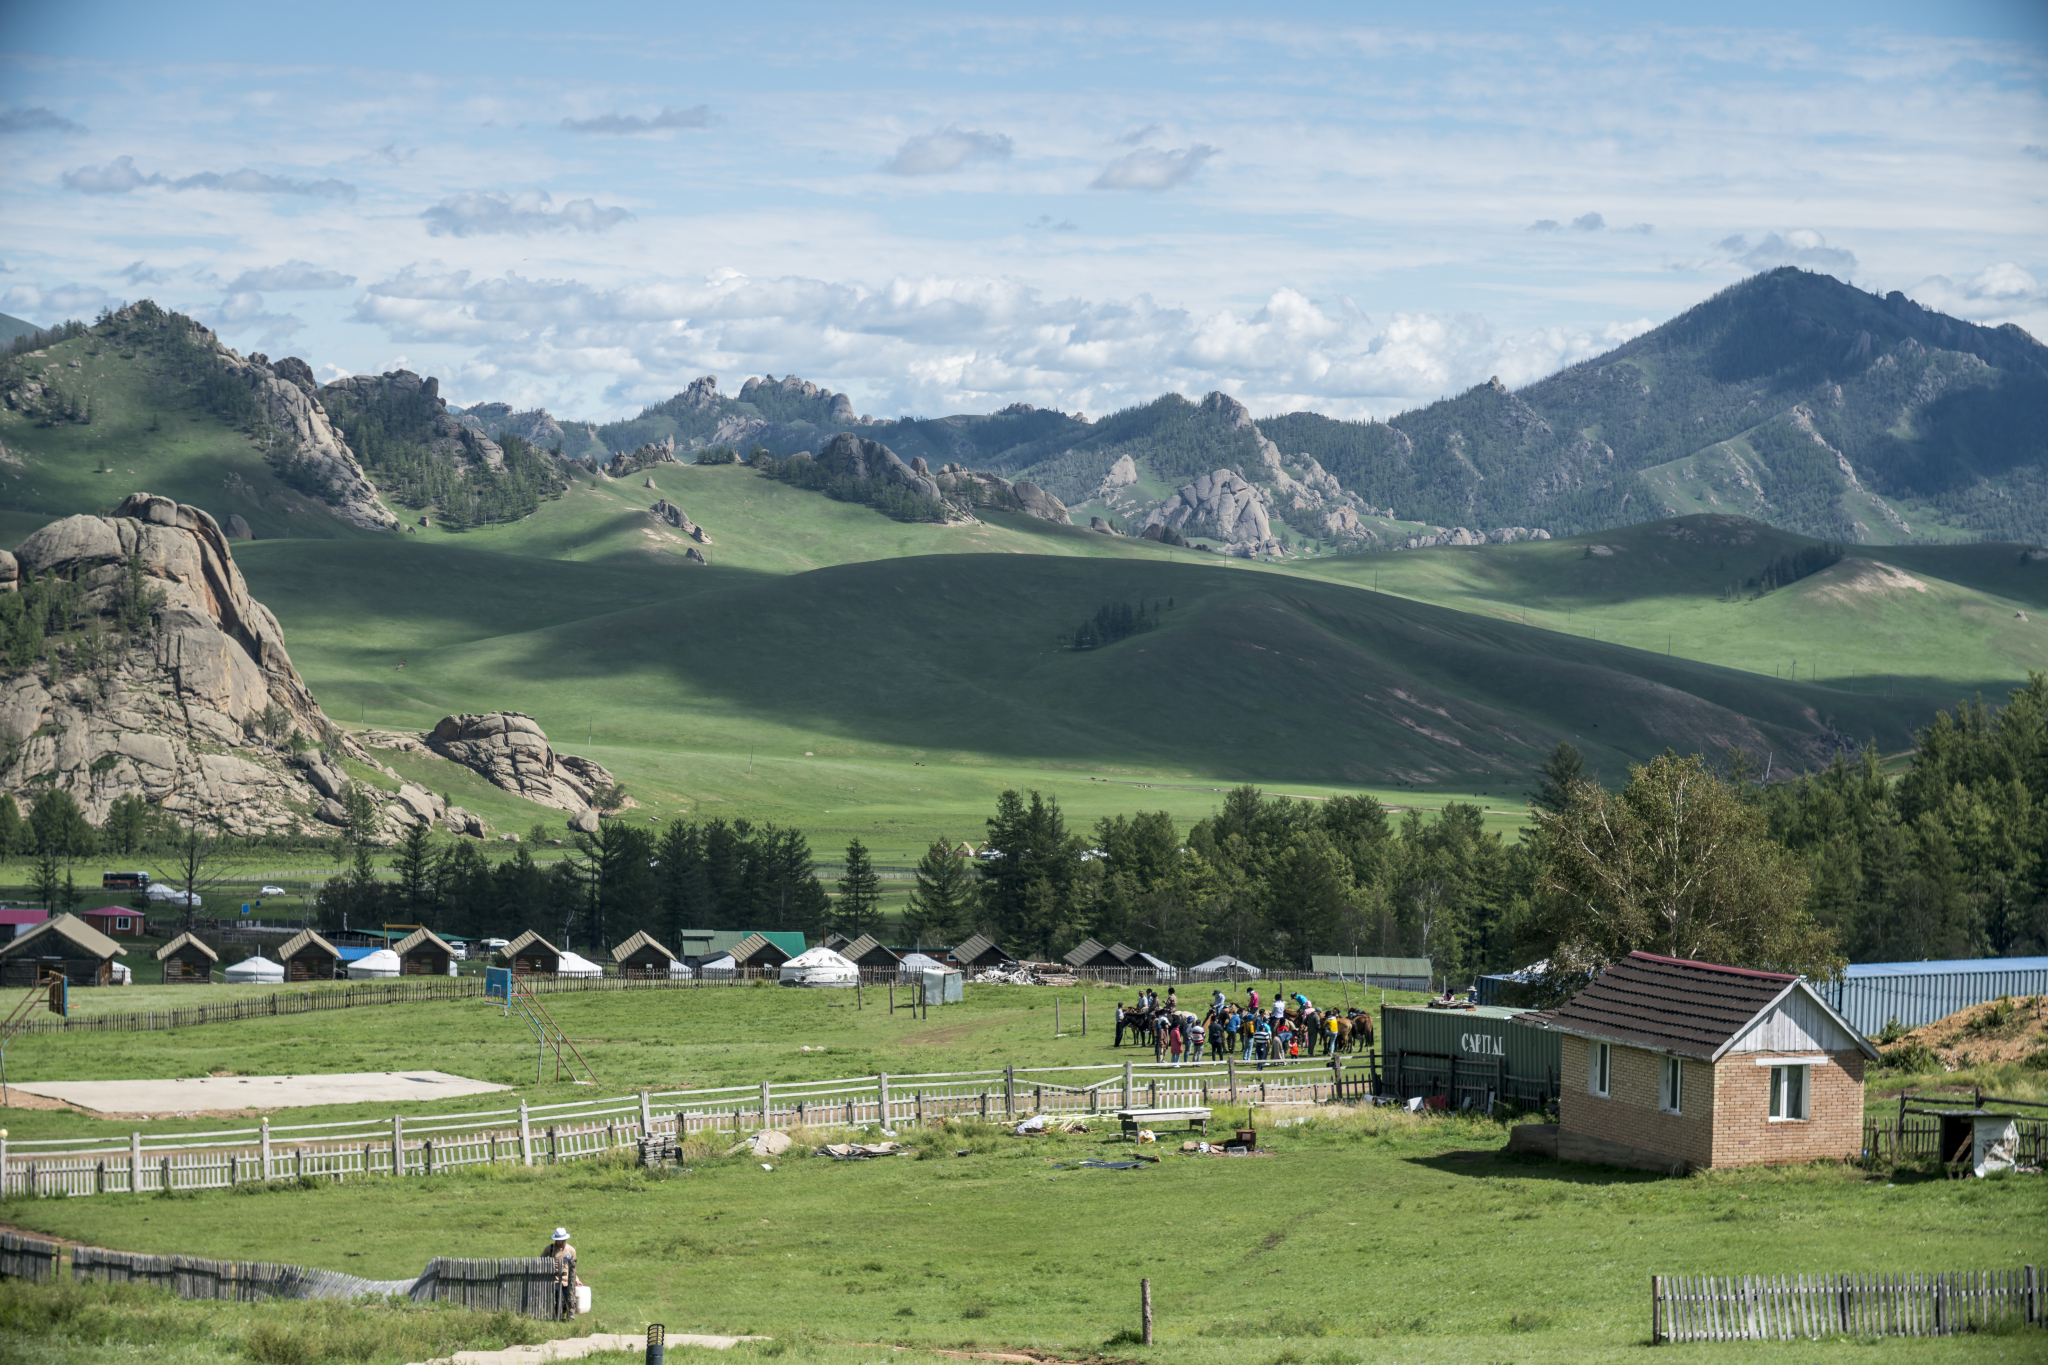 蒙古旅游图片,蒙古自助游图片,蒙古旅游景点照片 